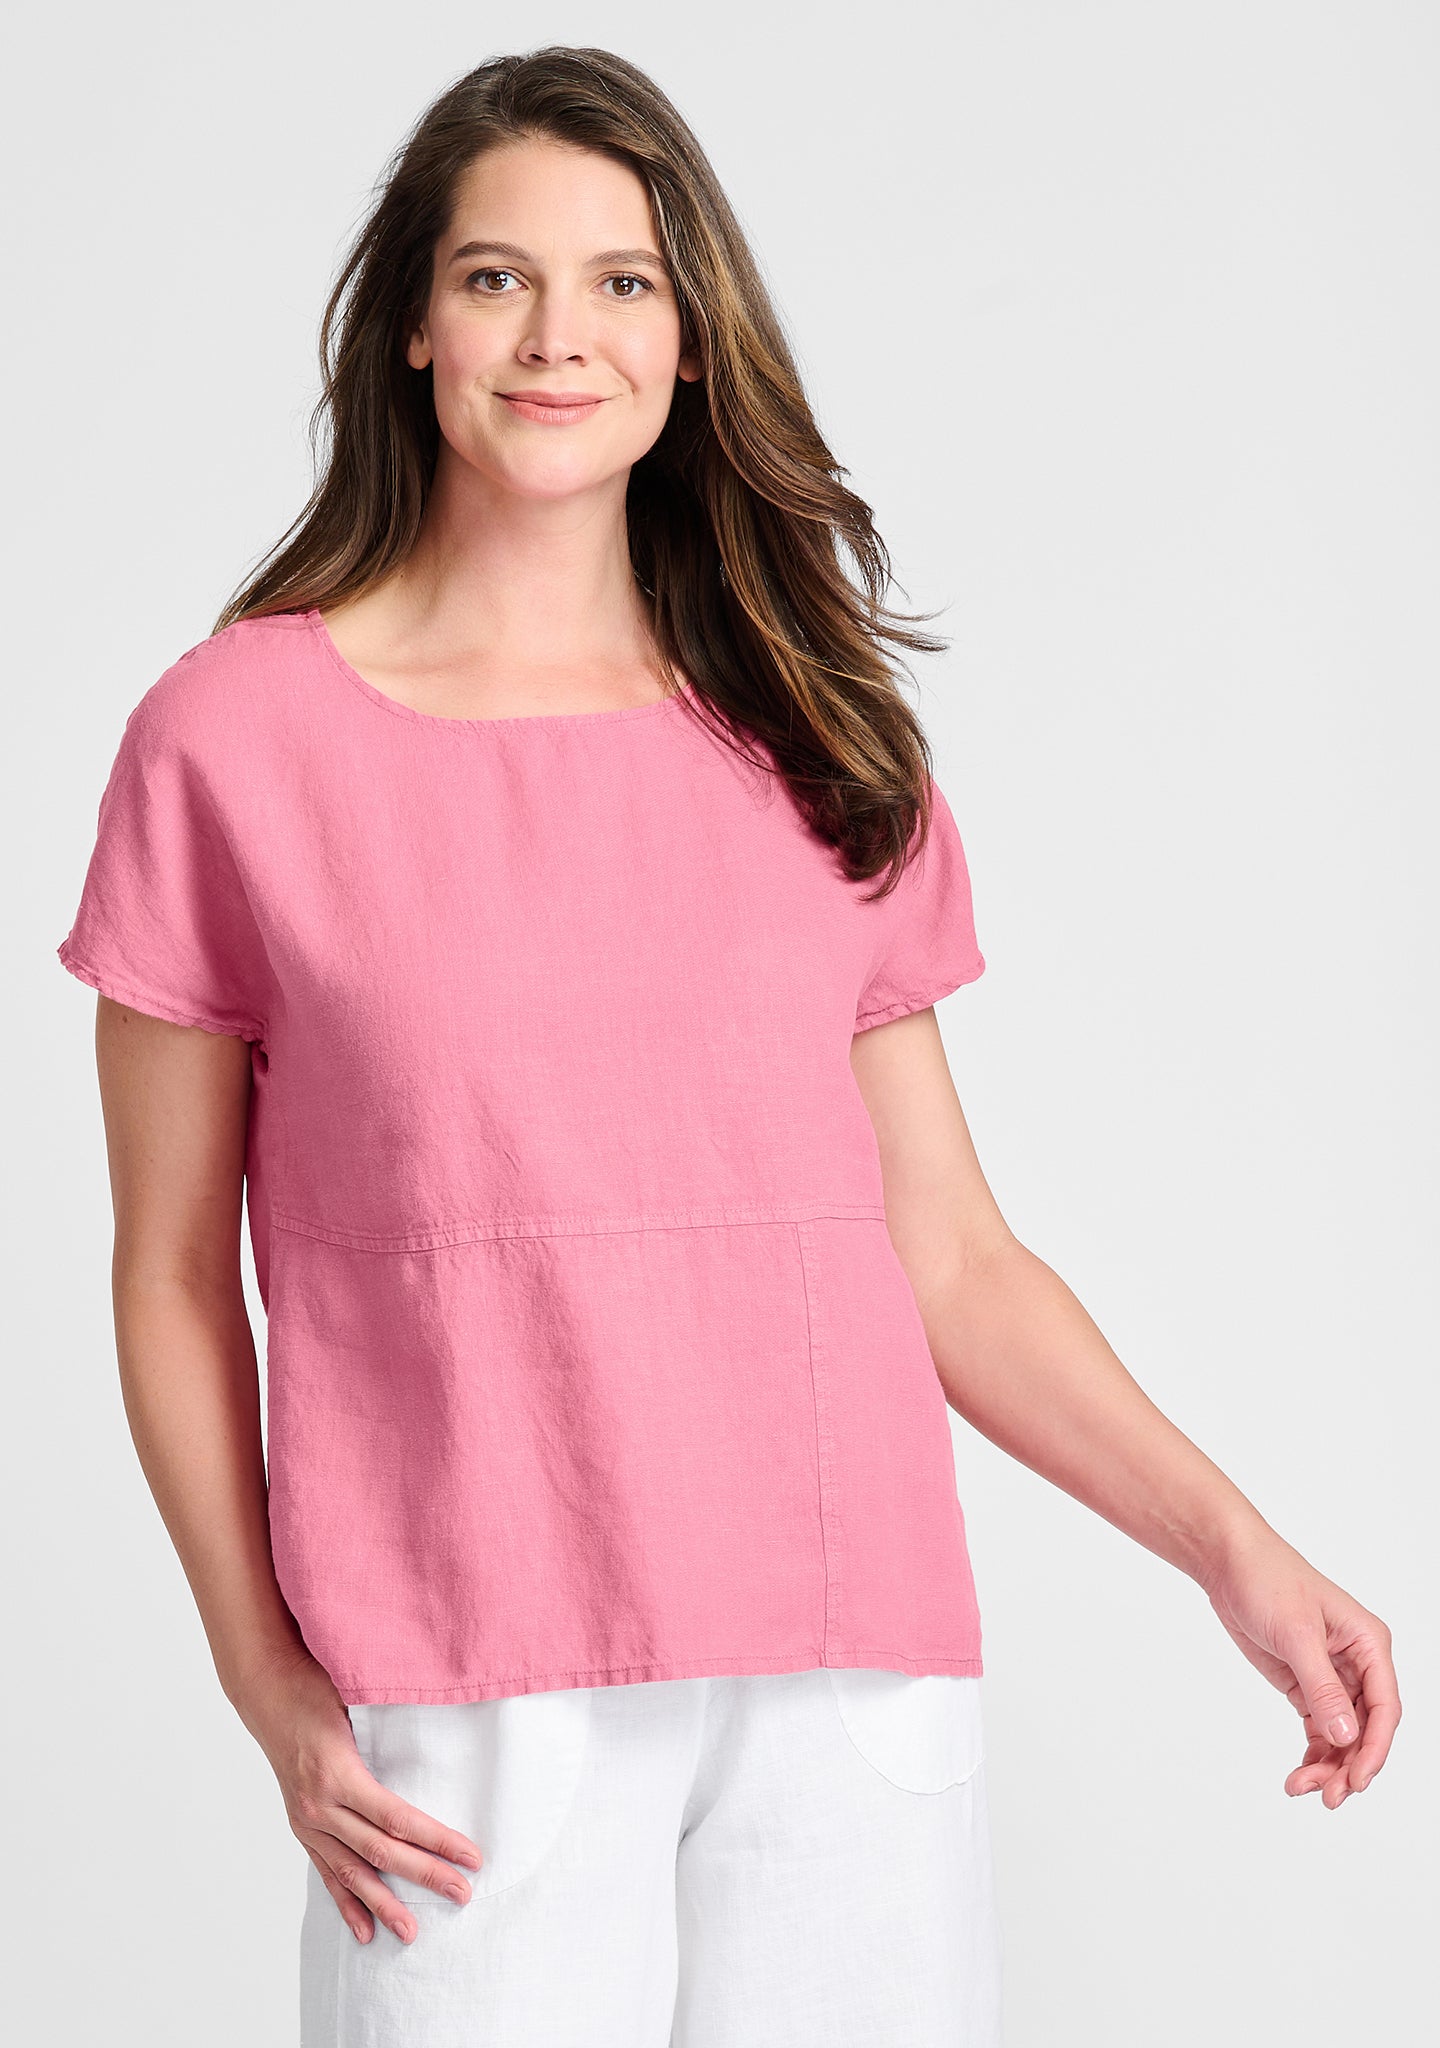 aria tee linen t shirt pink